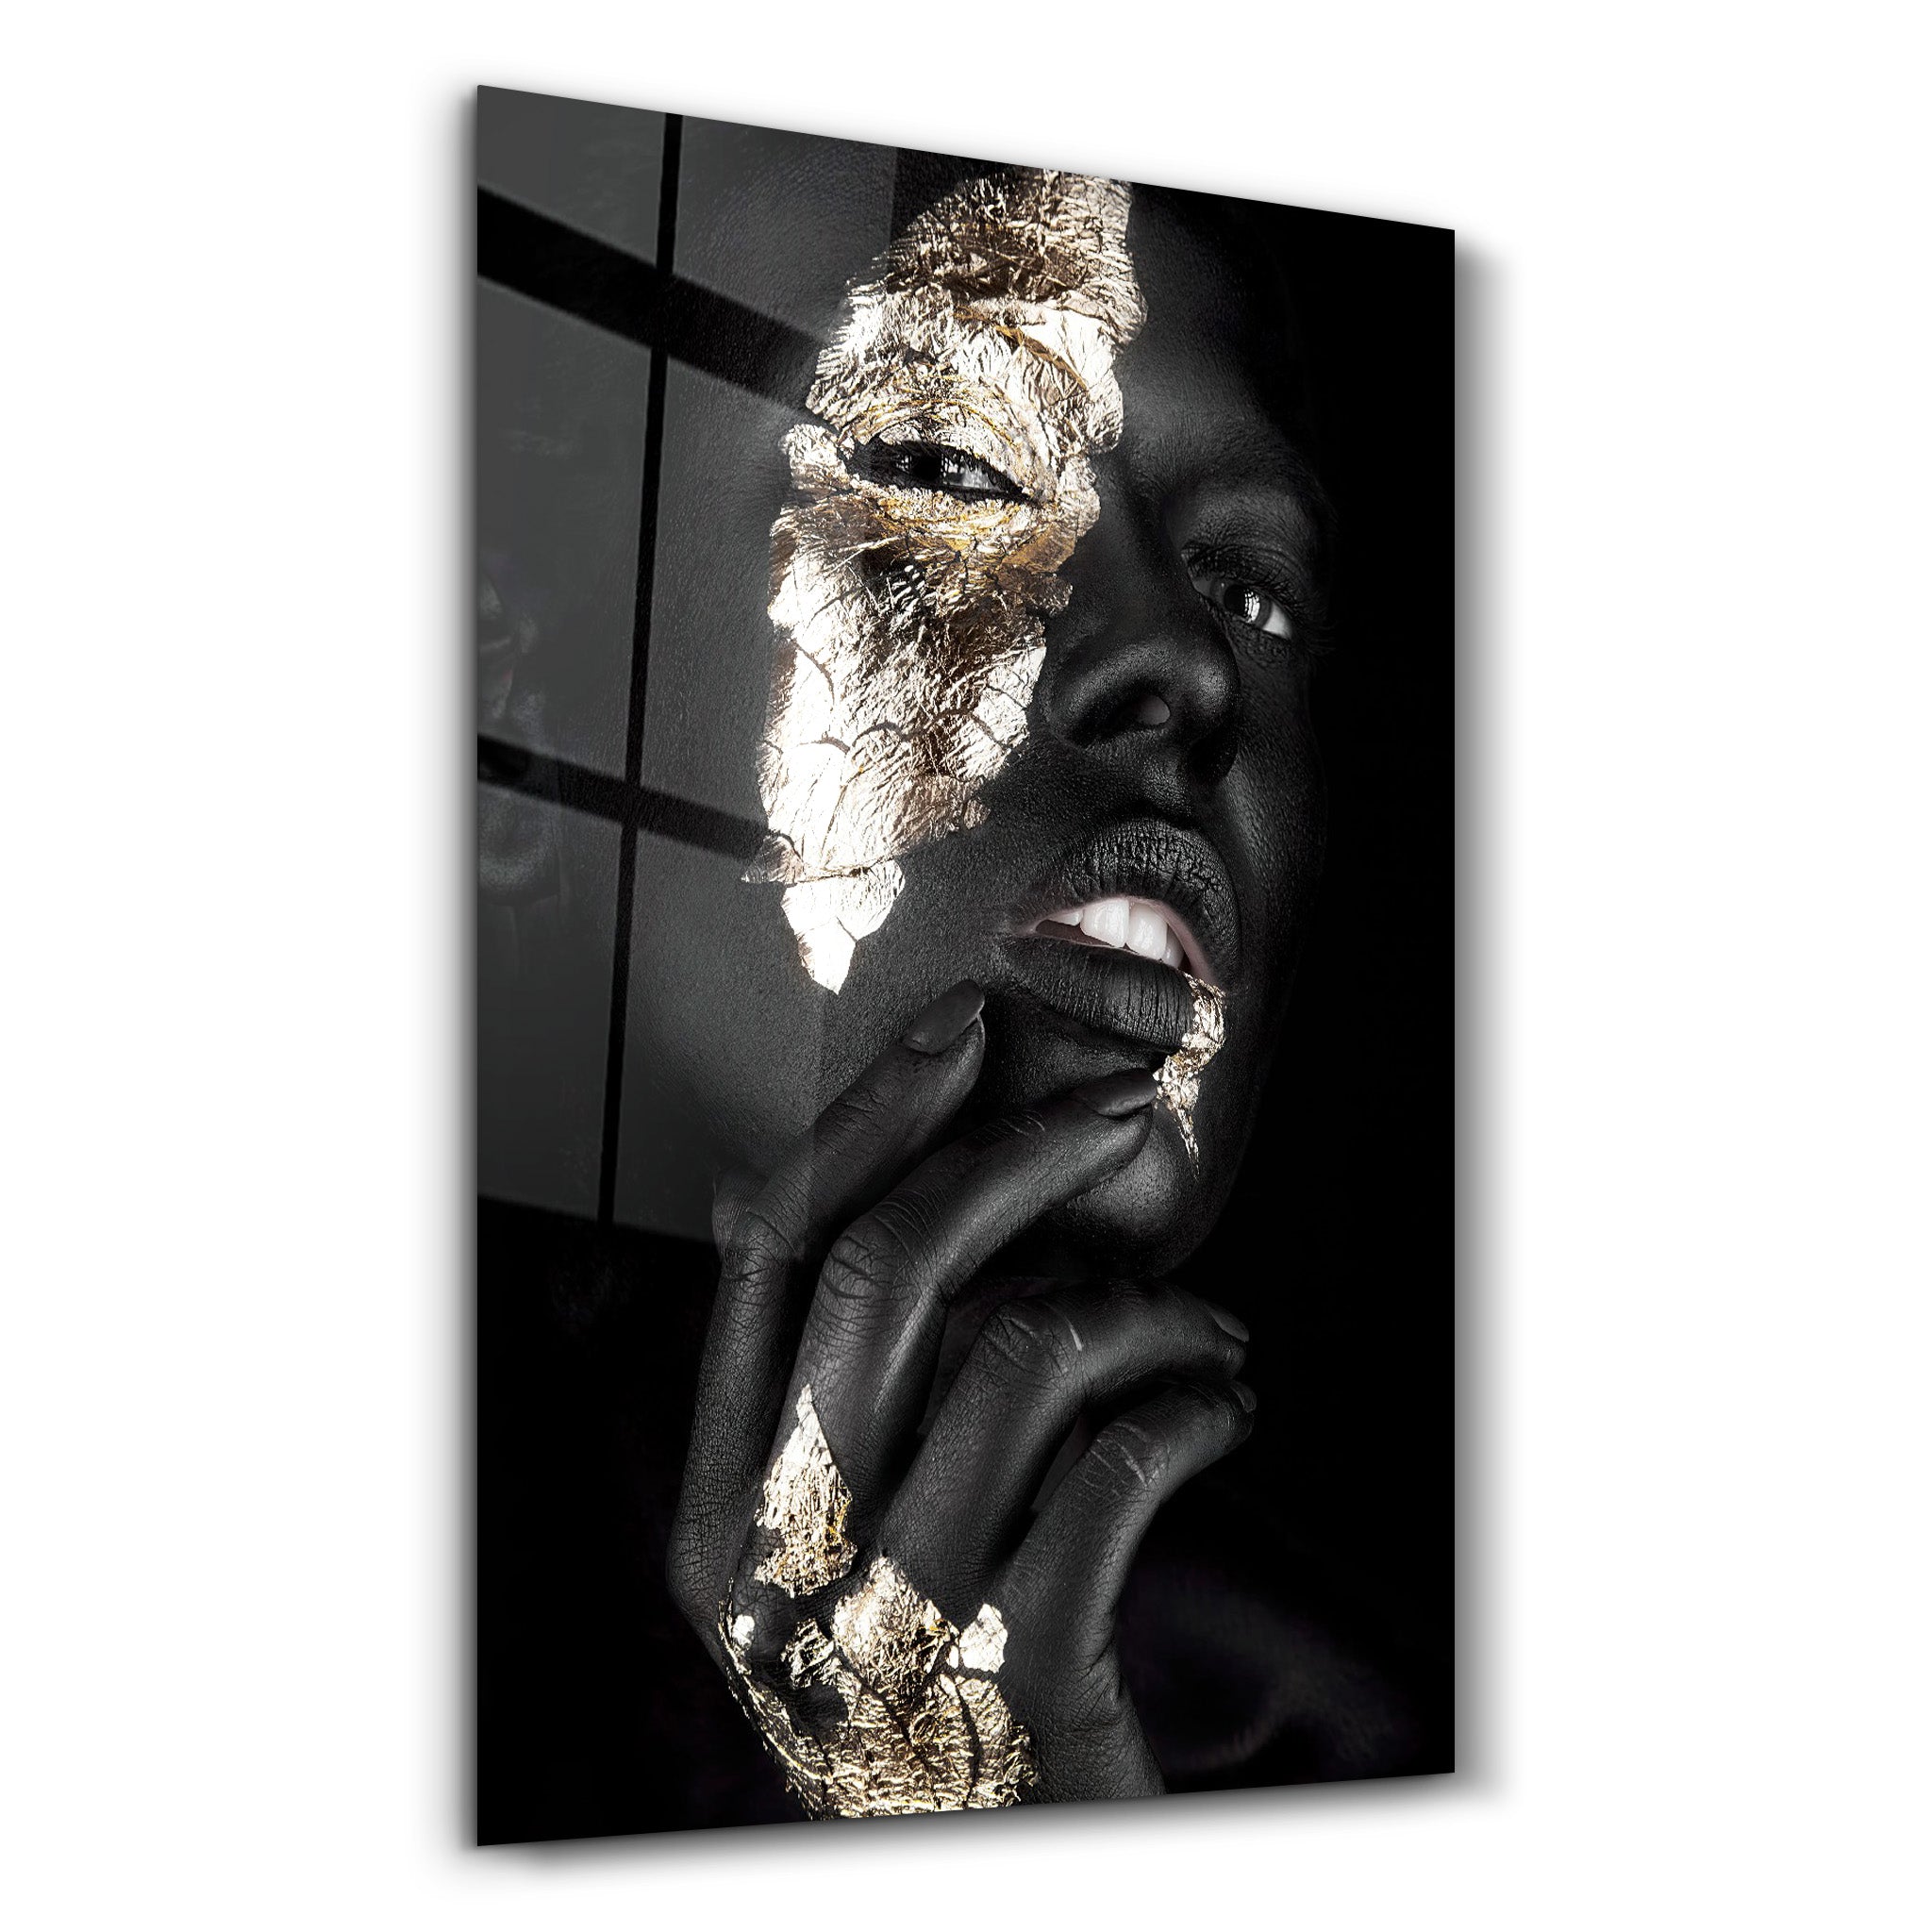 ・"Golden Face Woman Portrait"・Glass Wall Art - ArtDesigna Glass Printing Wall Art